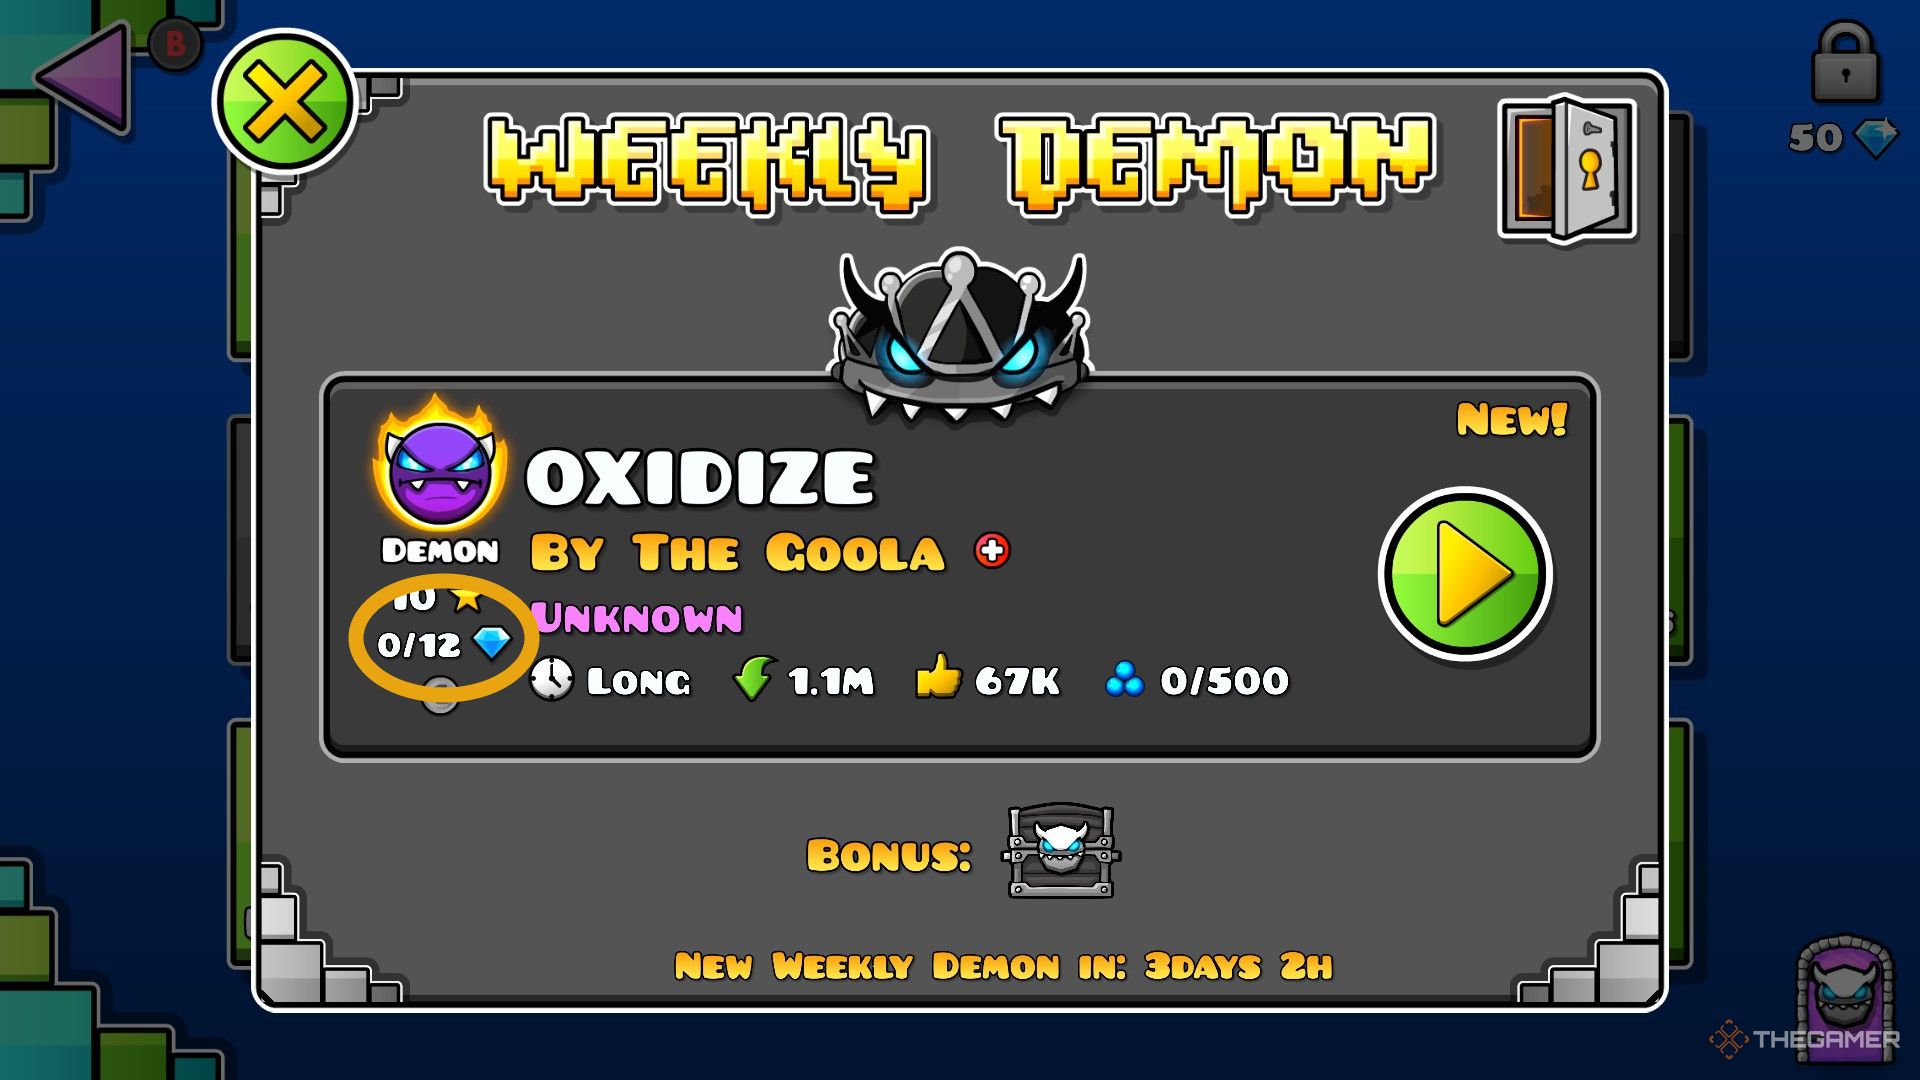 Ein Screenshot von Geometry Dash zeigt den Weekly Demon mit den verfügbaren Diamanten, die durch den Fortschritt verdient werden (siehe unten links).